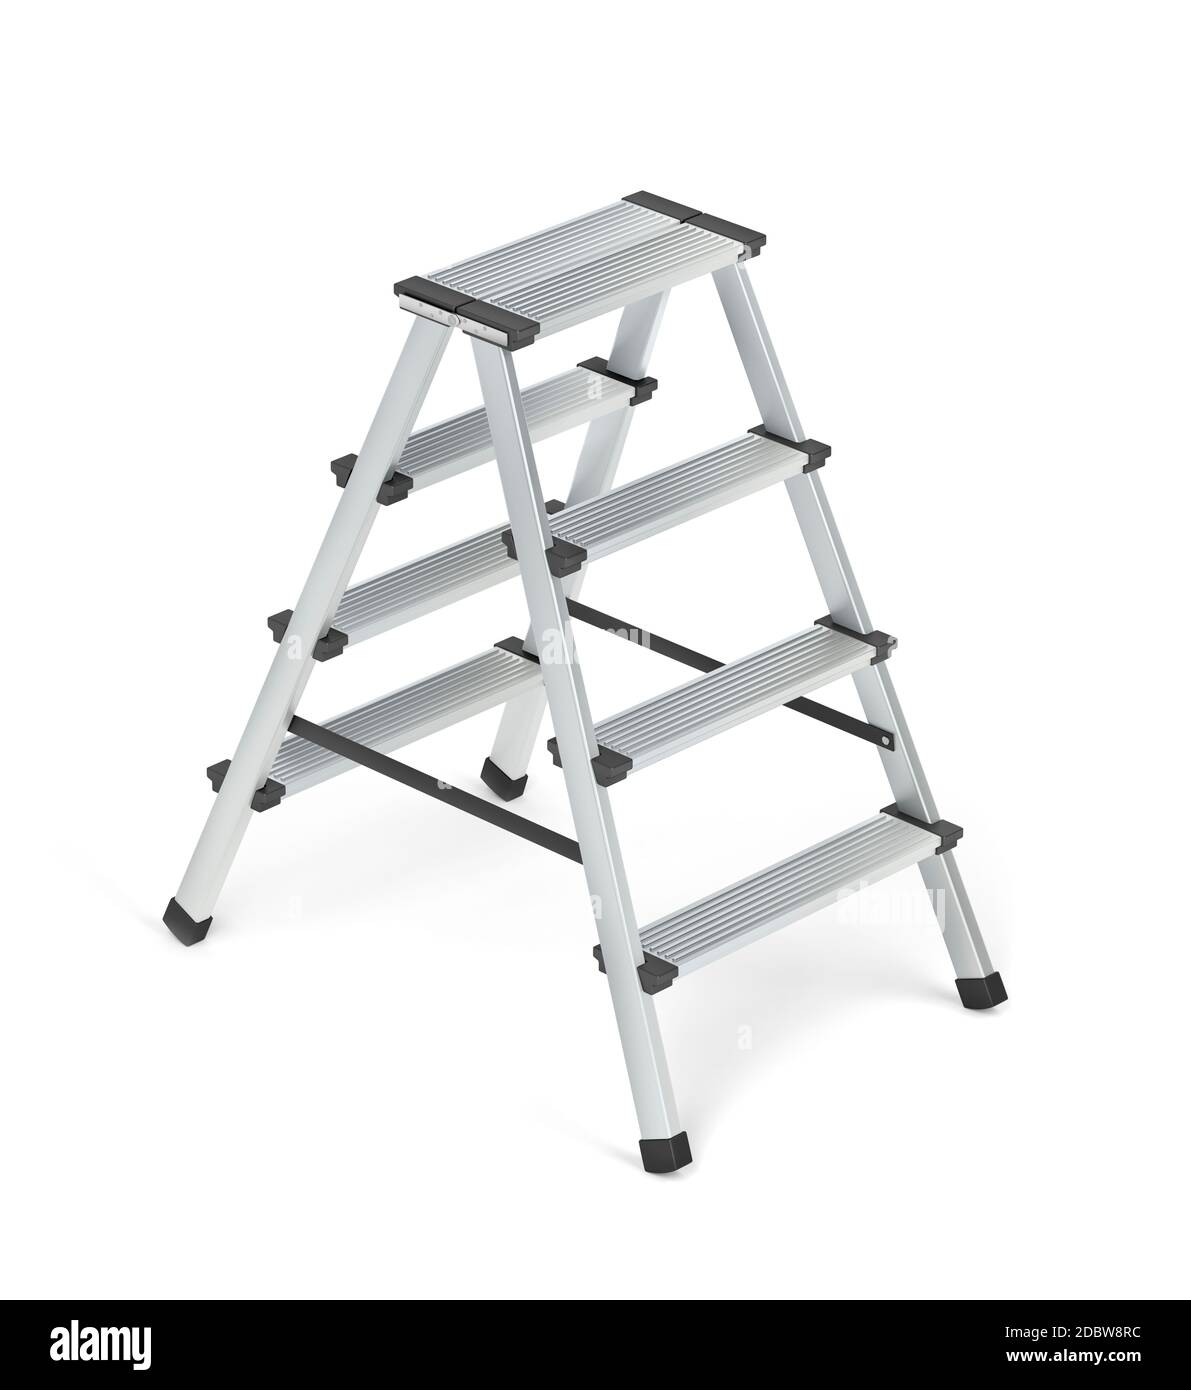 Aluminum ladder on white background Stock Photo